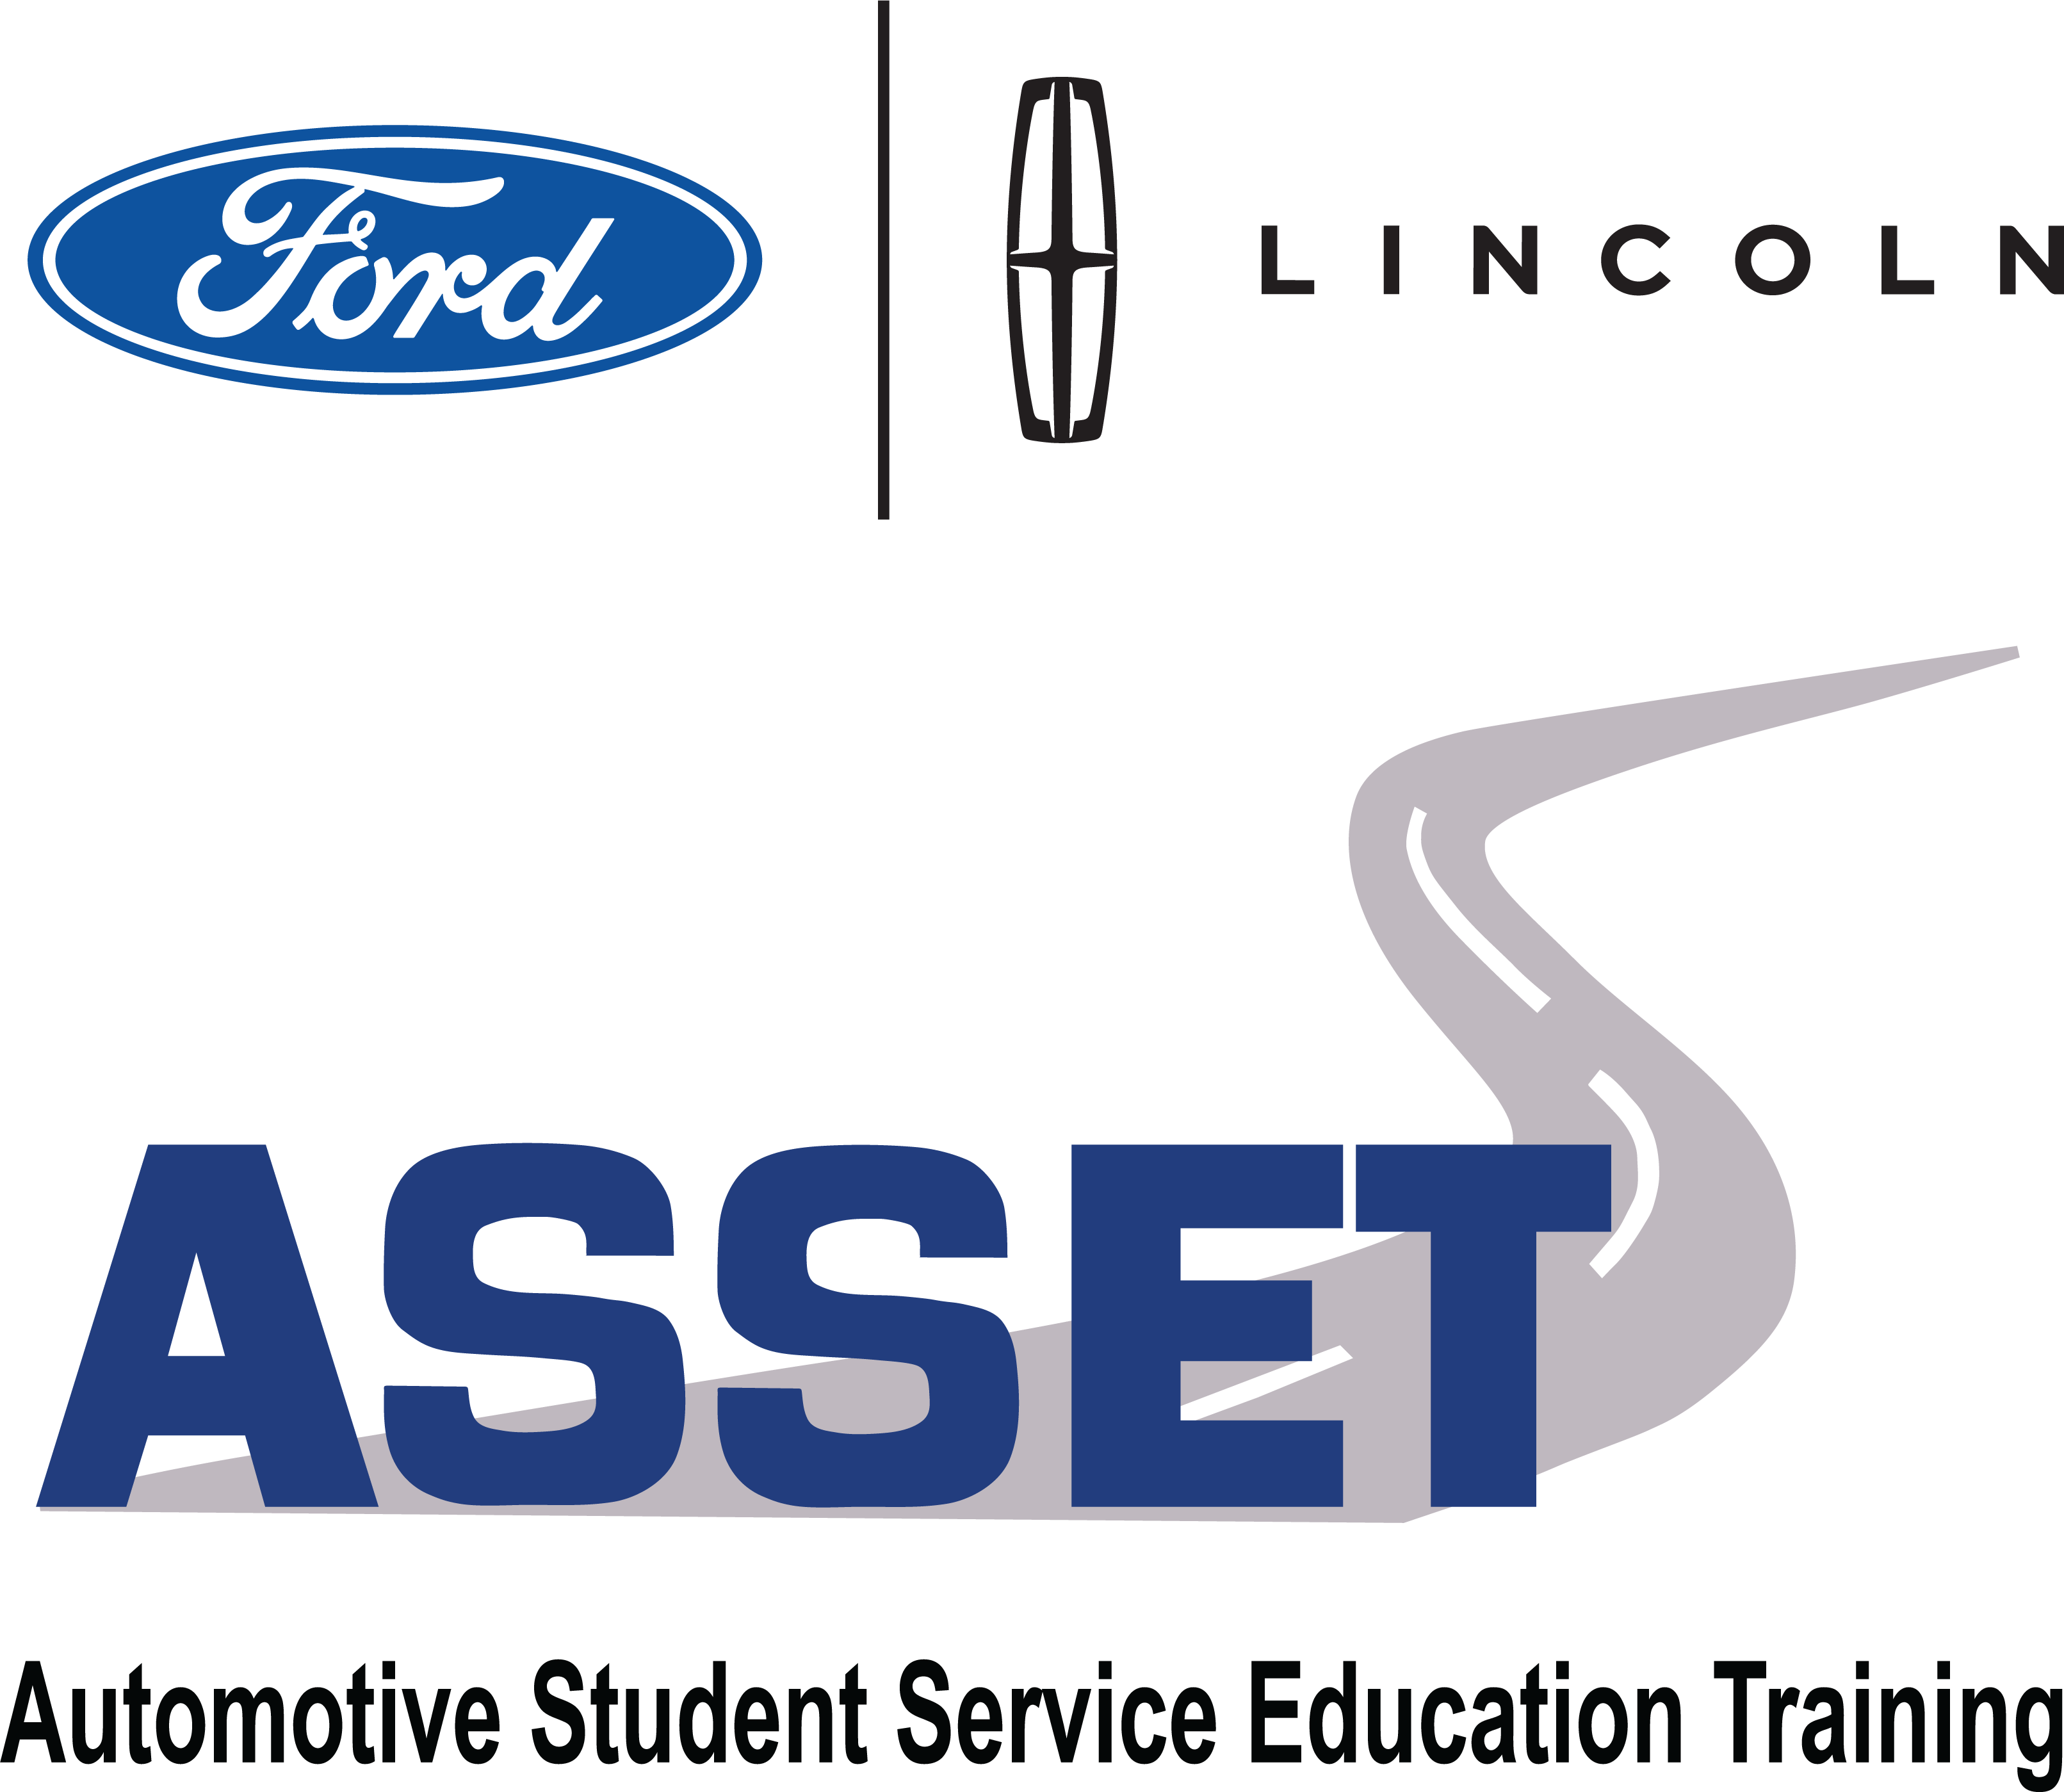 Ford Asset logo